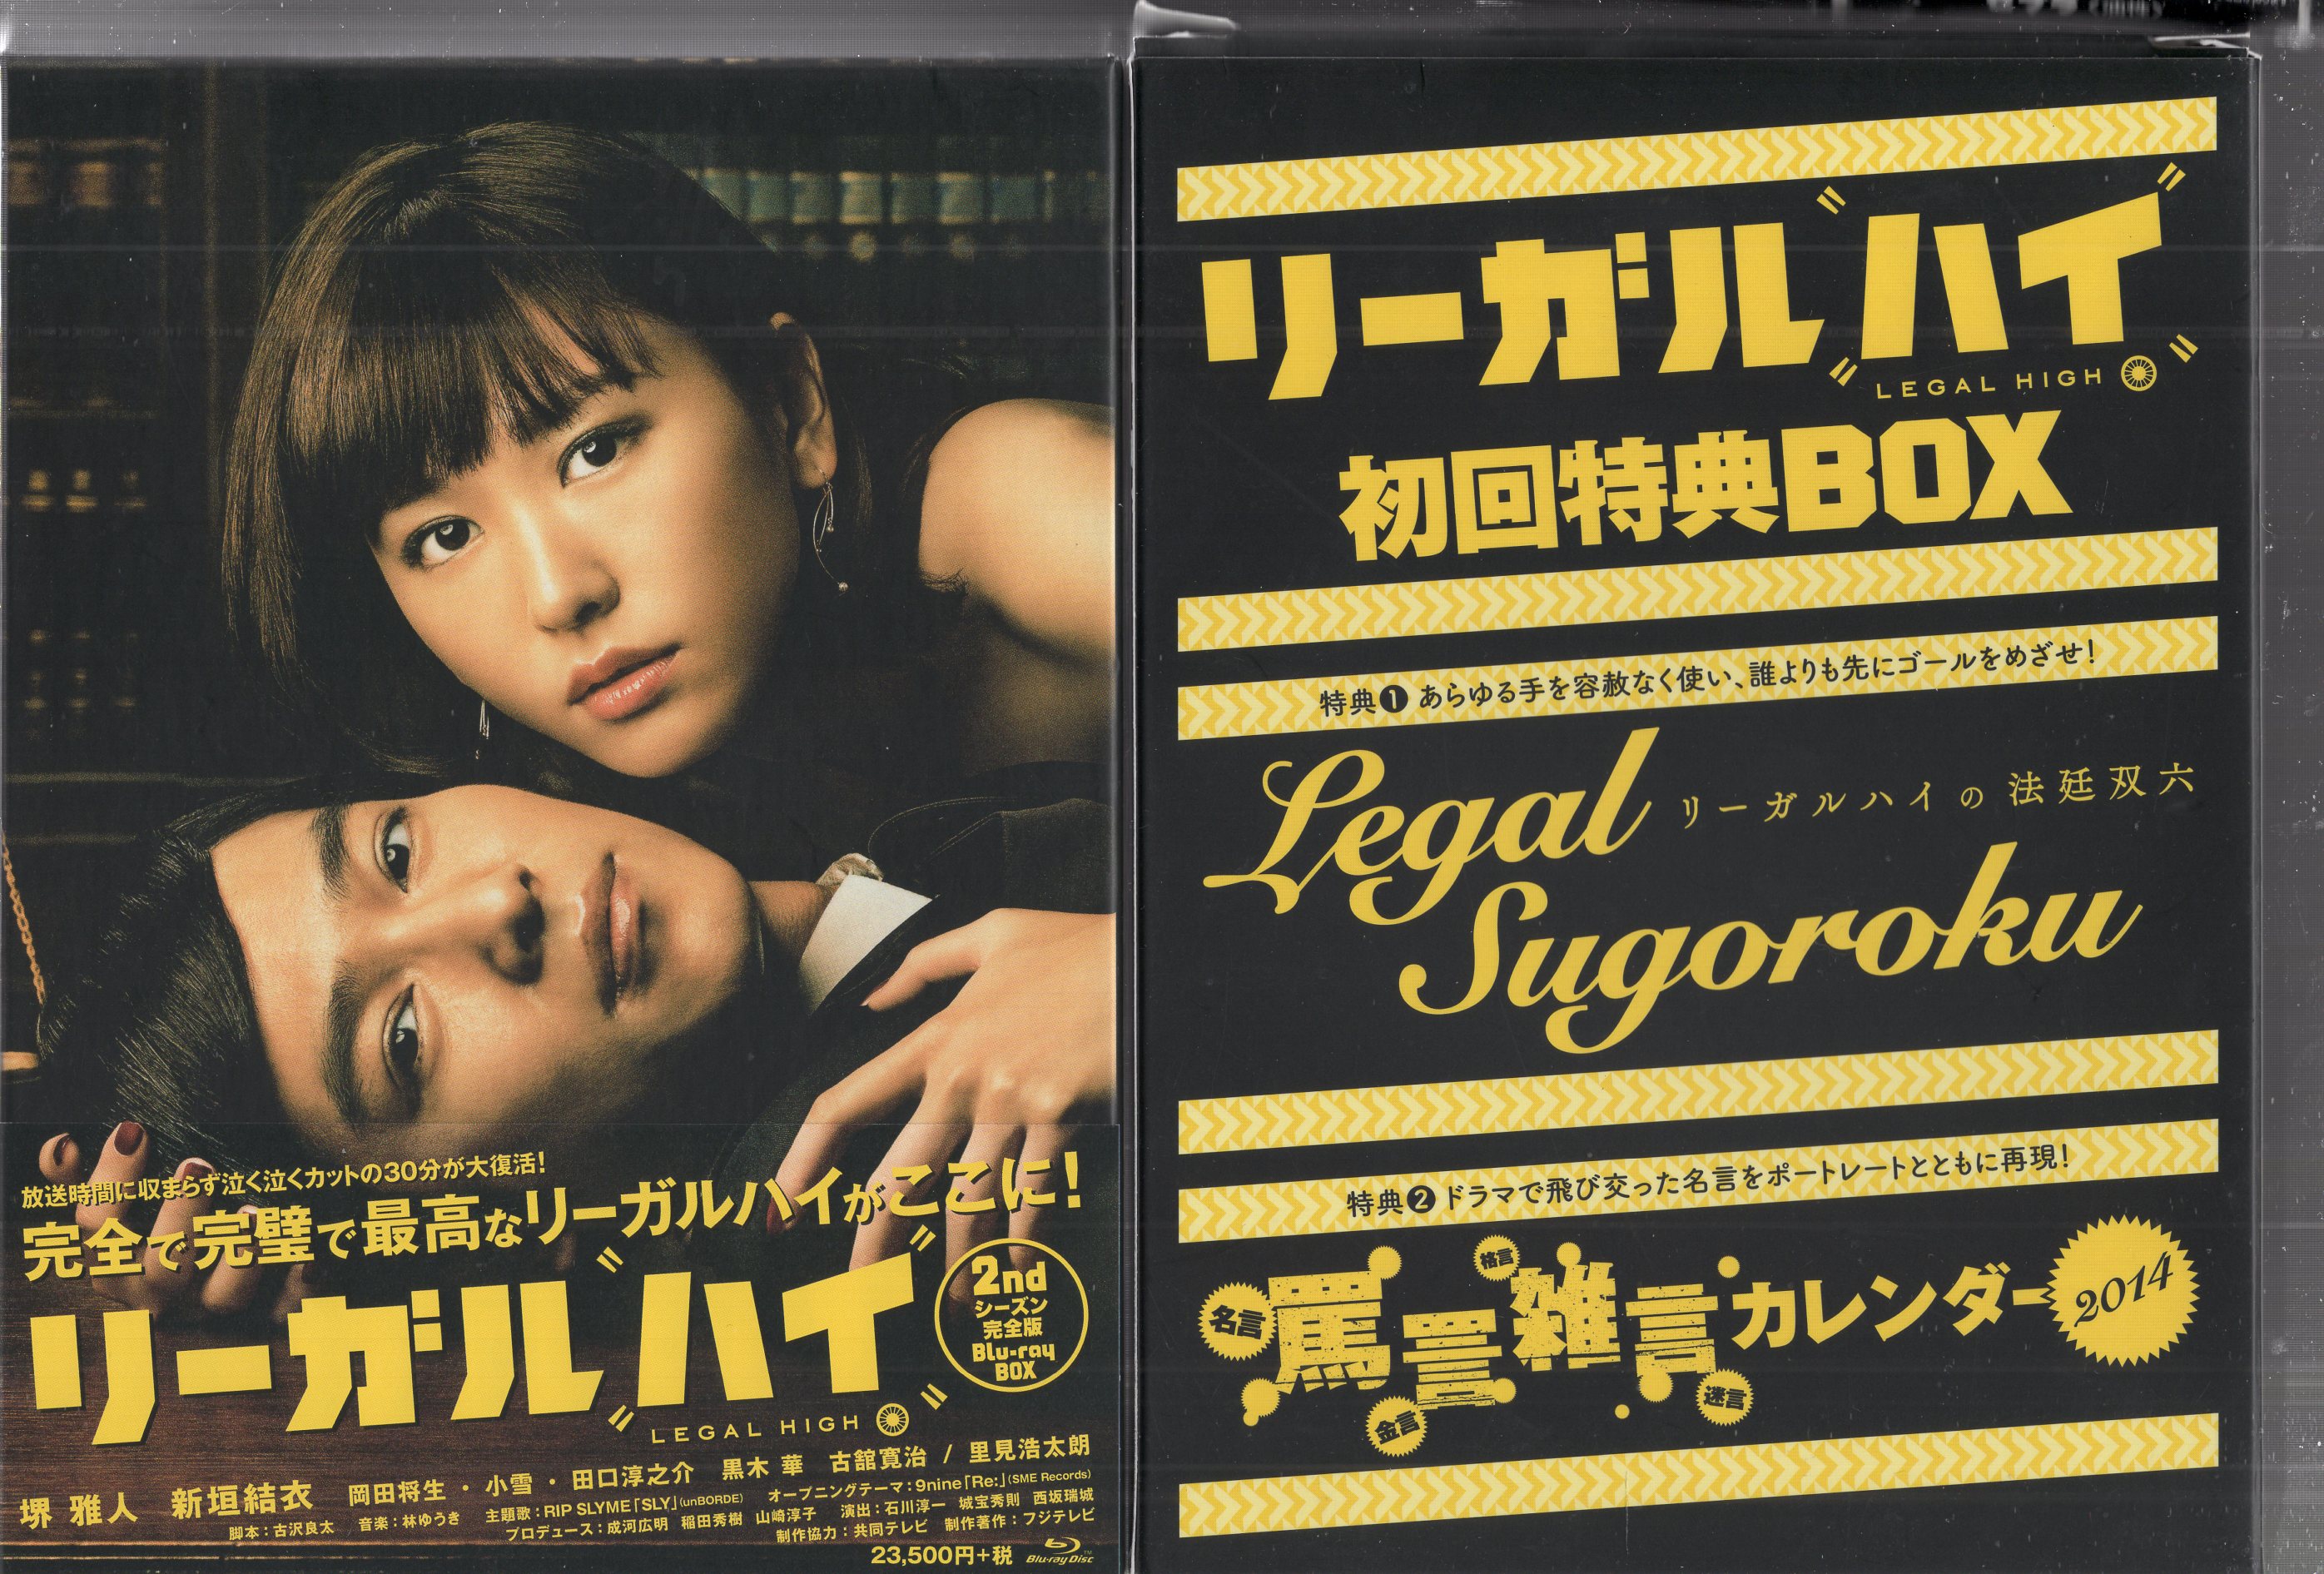 リーガル・ハイ 1,2ndシーズン Blu-ray BOX〈7枚組〉セル版 全話里見